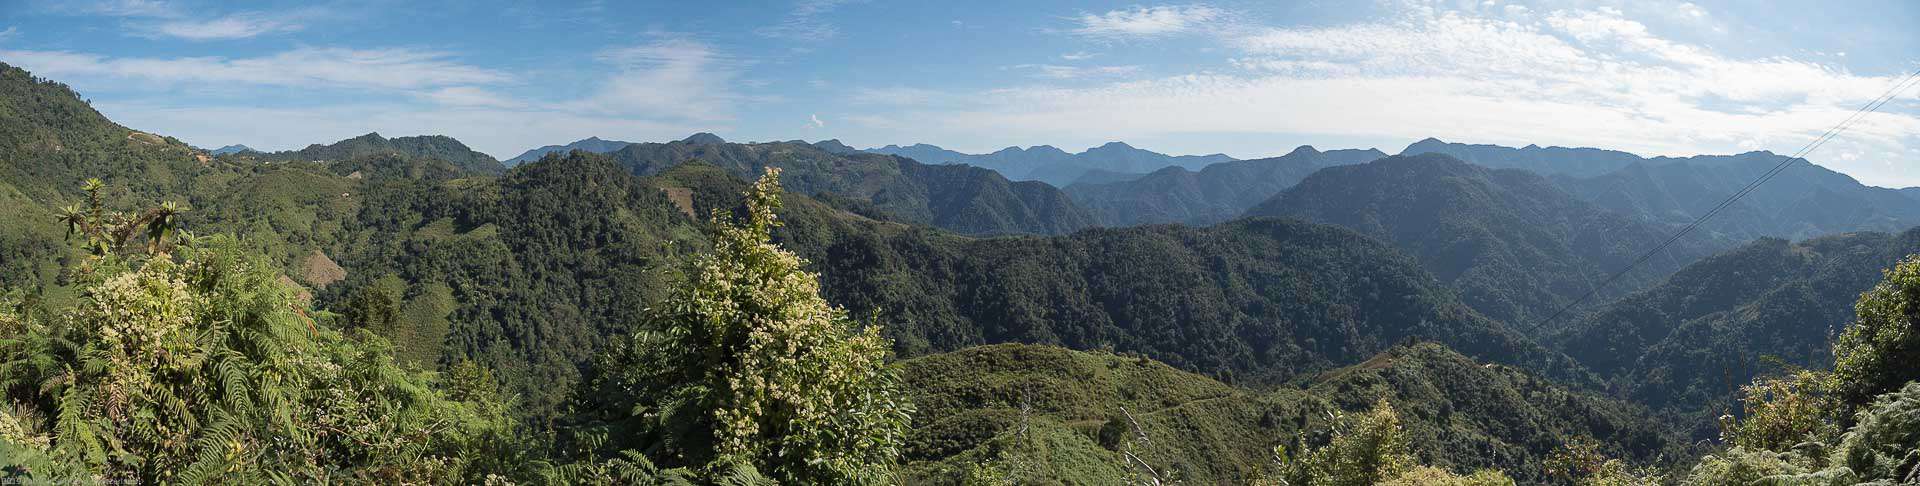 Bamboo Retreat Hotel - image "Reise in das Land des Sonnenaufgangs: Arunachal Pradesh, Indien" 173